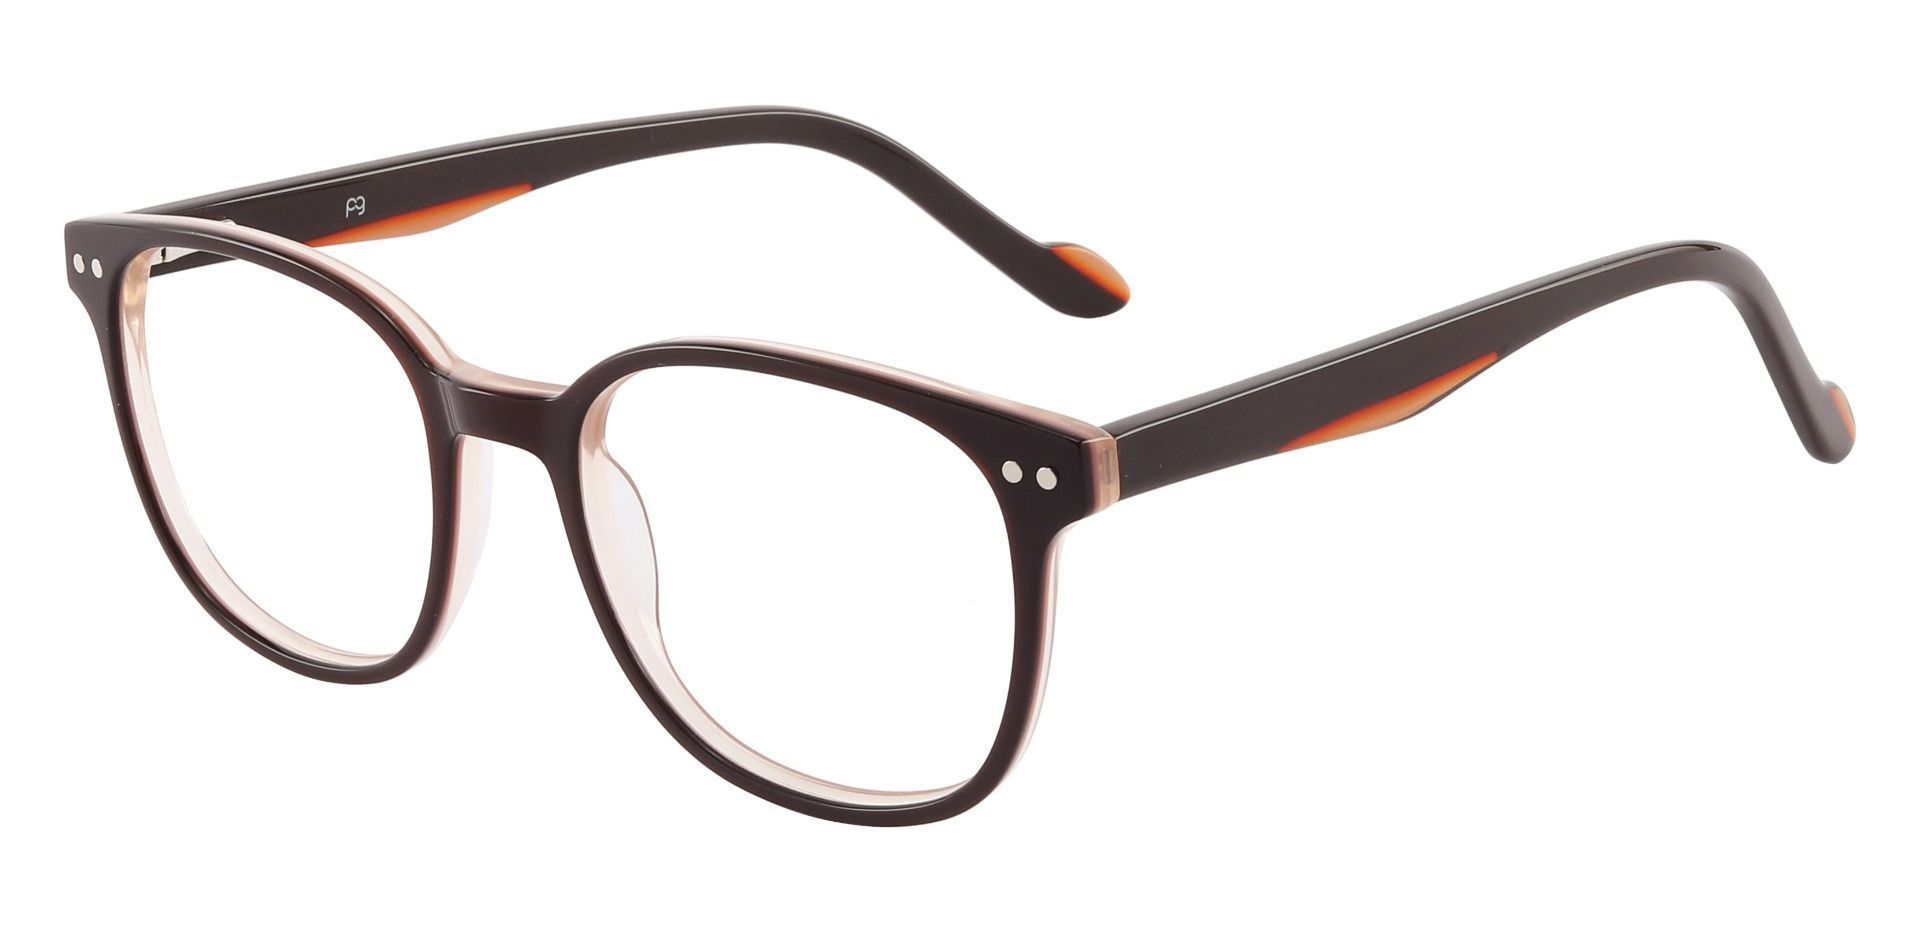 Jena Oval Eyeglasses Frame - Brown